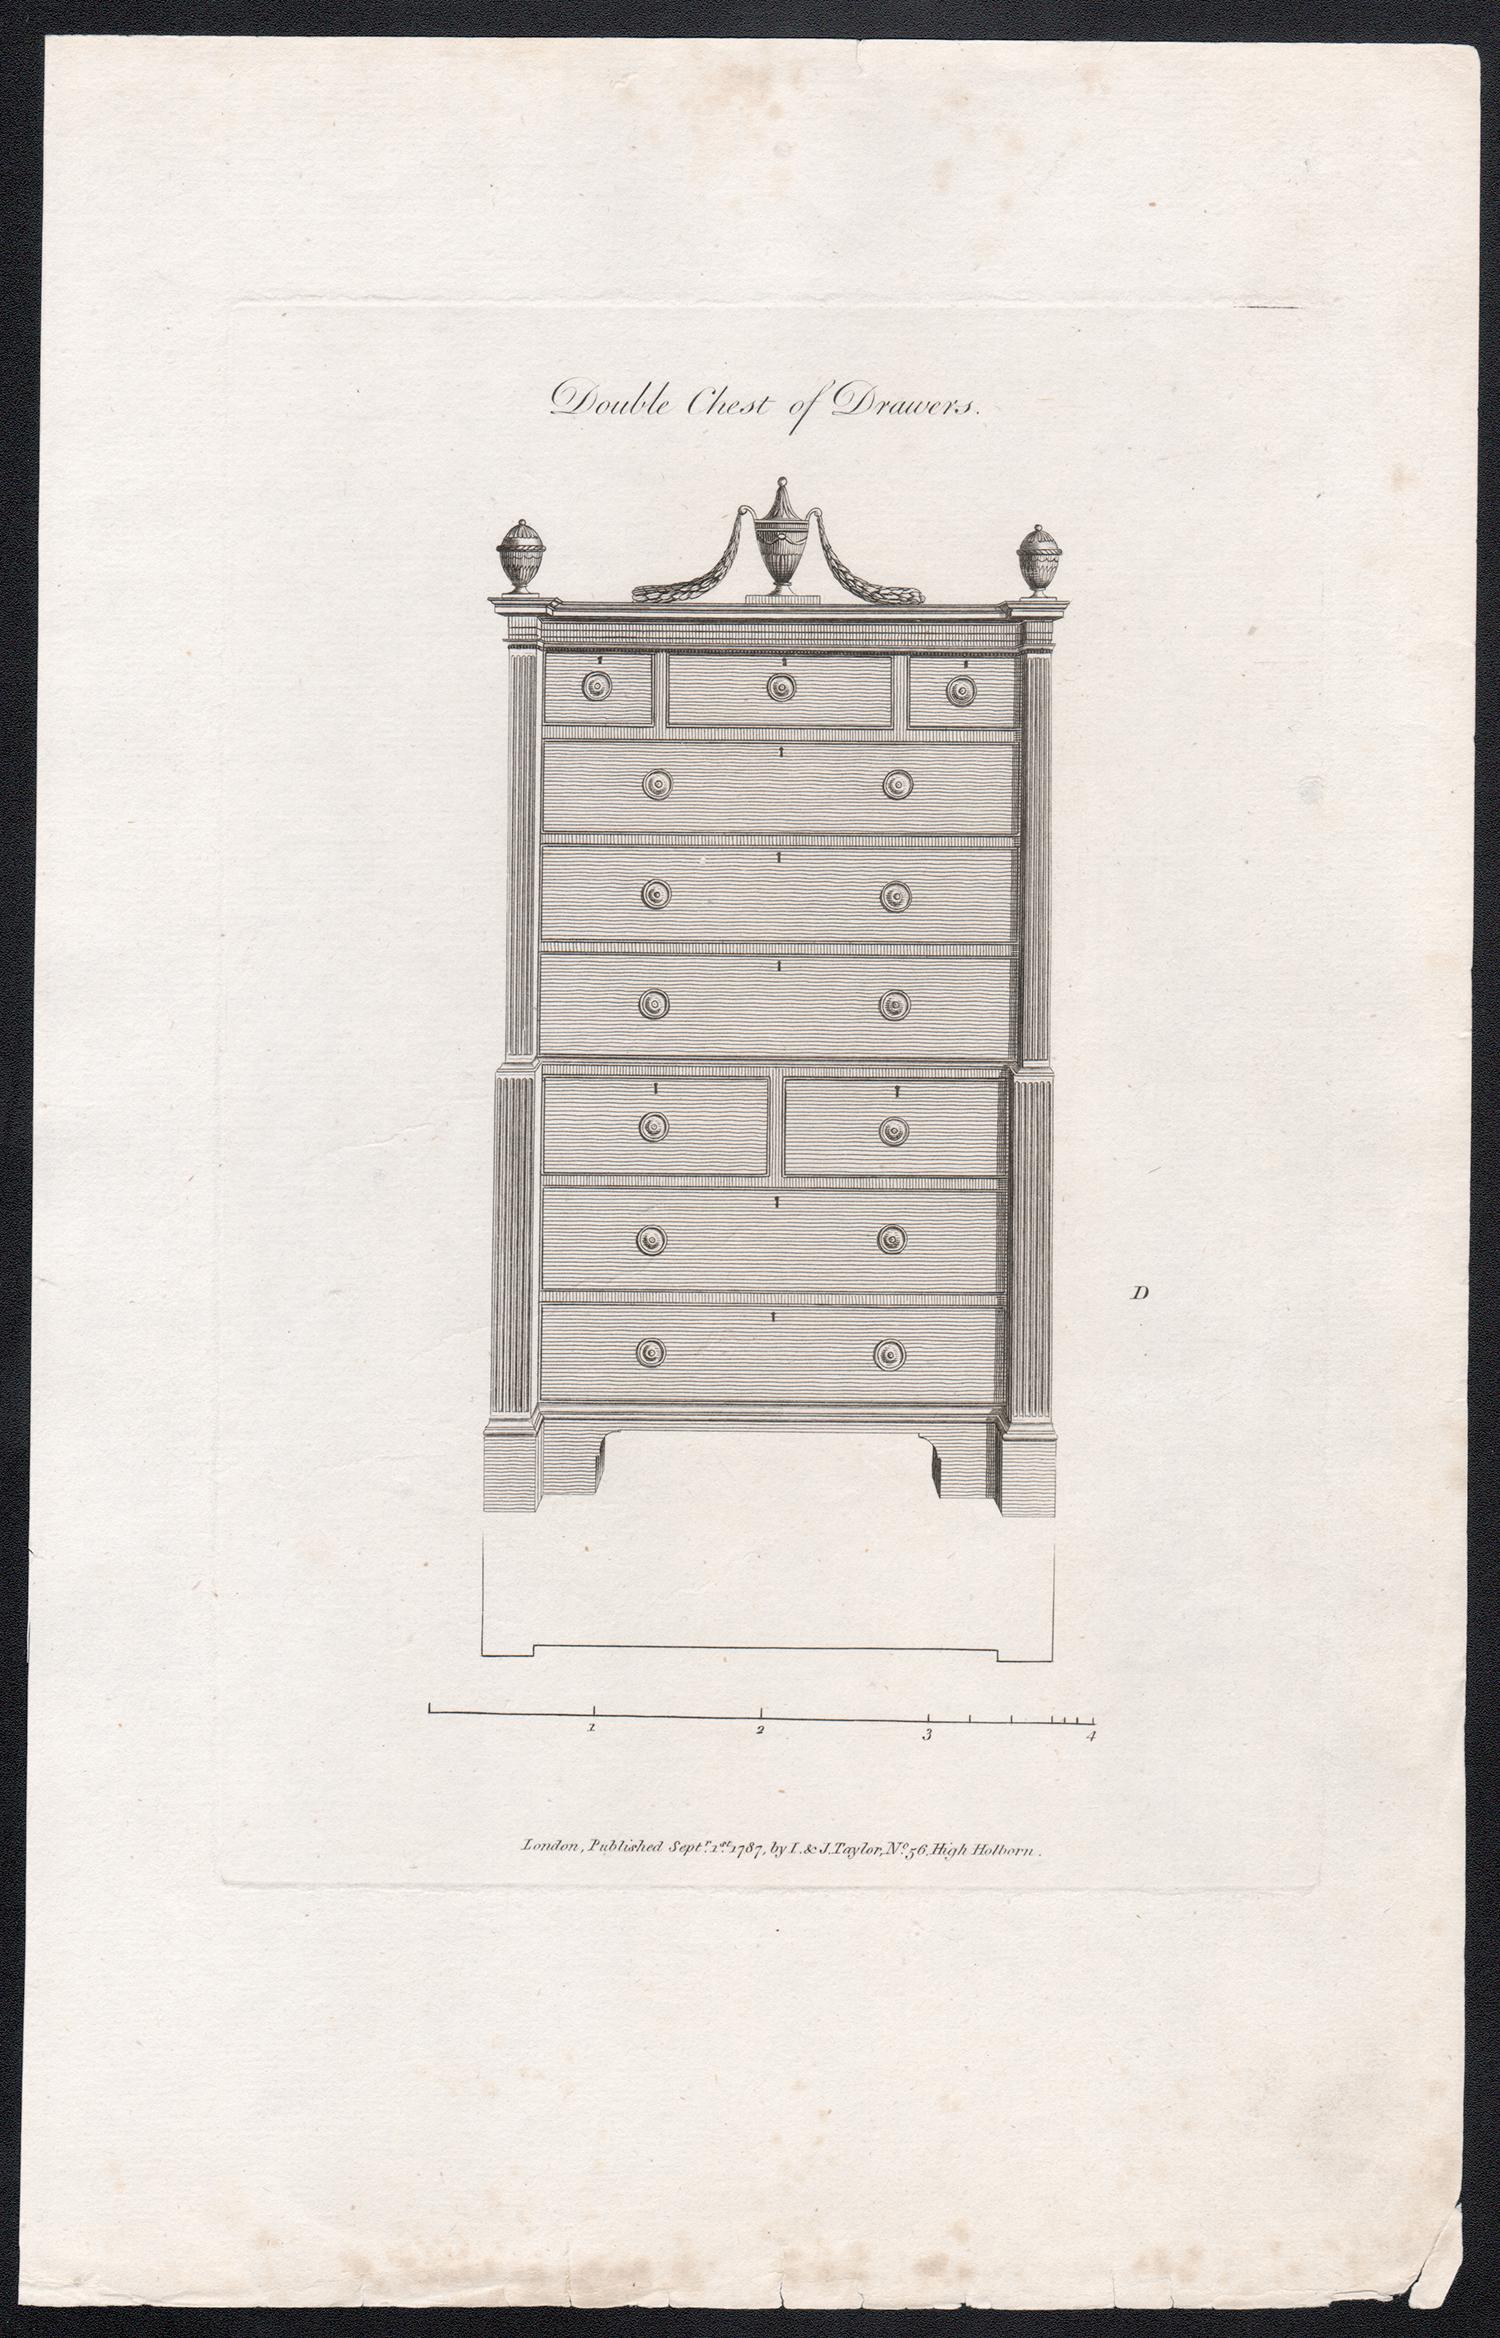 Doppelkommode mit Schubladen, Hepplewhite, georgianisches Möbeldesign – Print von George Hepplewhite